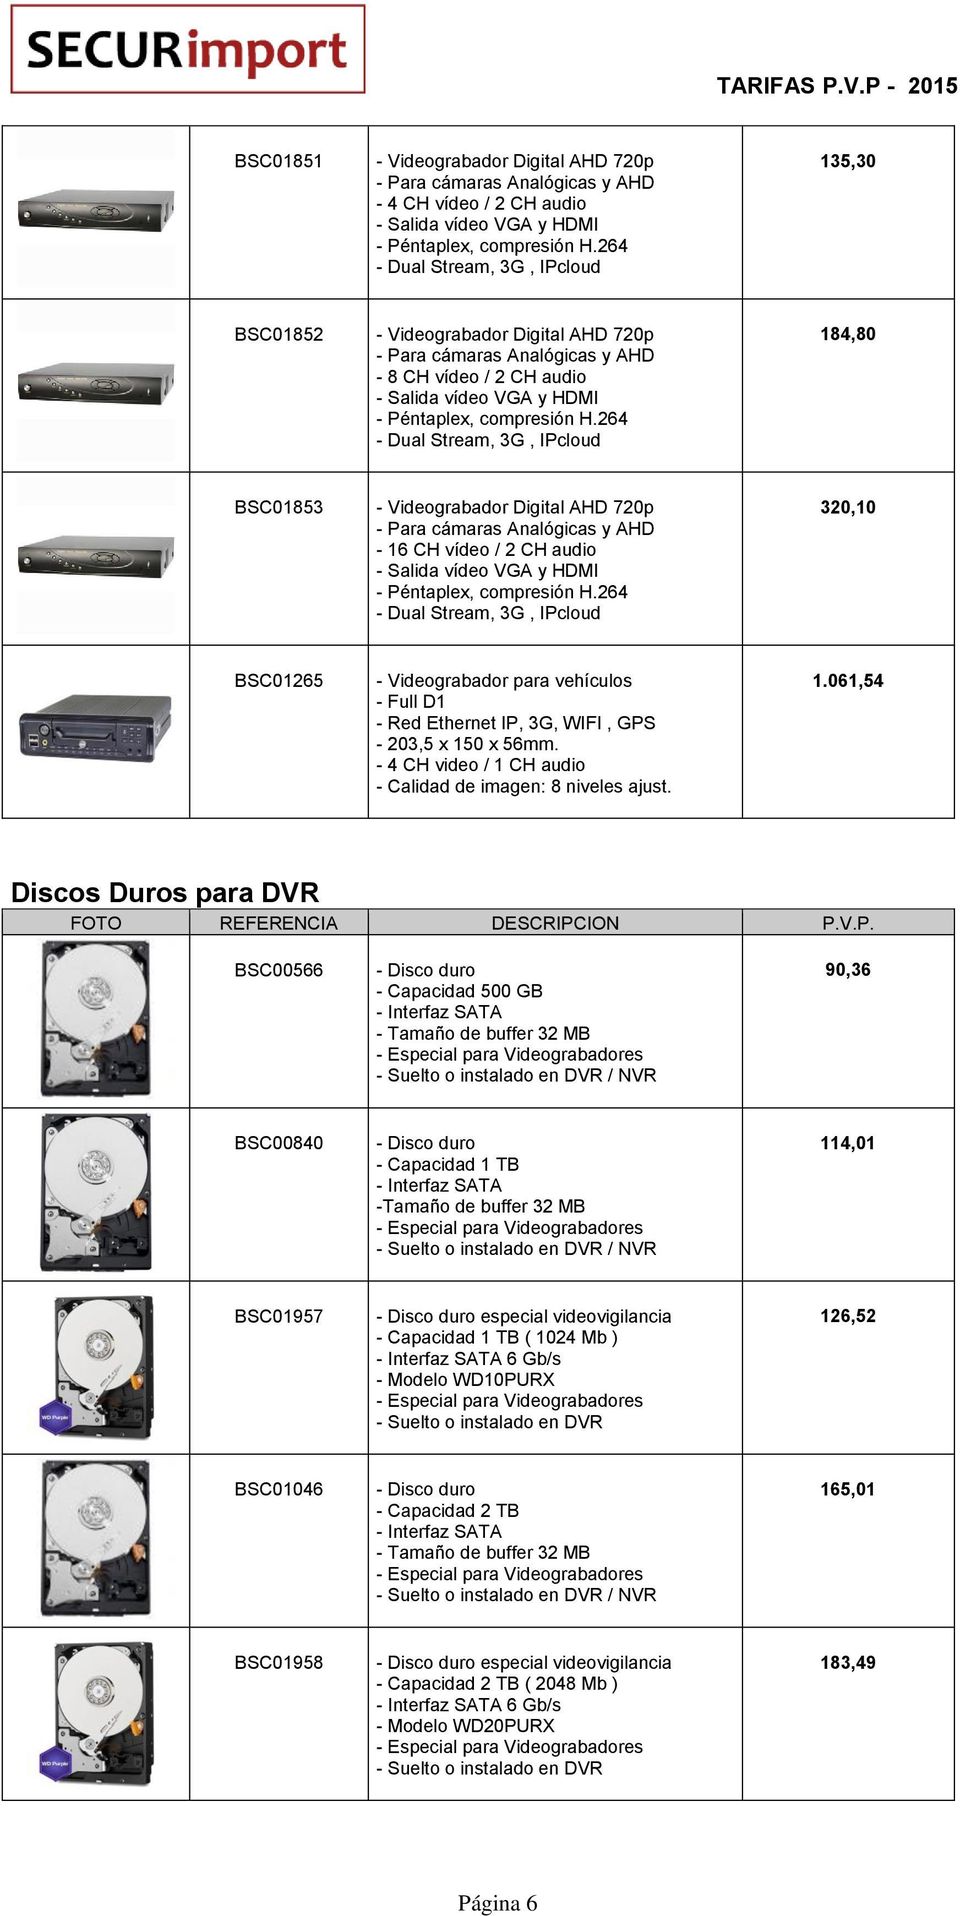 264 - Dual Stream, 3G, IPcloud 184,80 BSC01853 - Videograbador Digital AHD 720p - Para cámaras Analógicas y AHD - 16 CH vídeo / 2 CH audio - Salida vídeo VGA y HDMI - Péntaplex, compresión H.